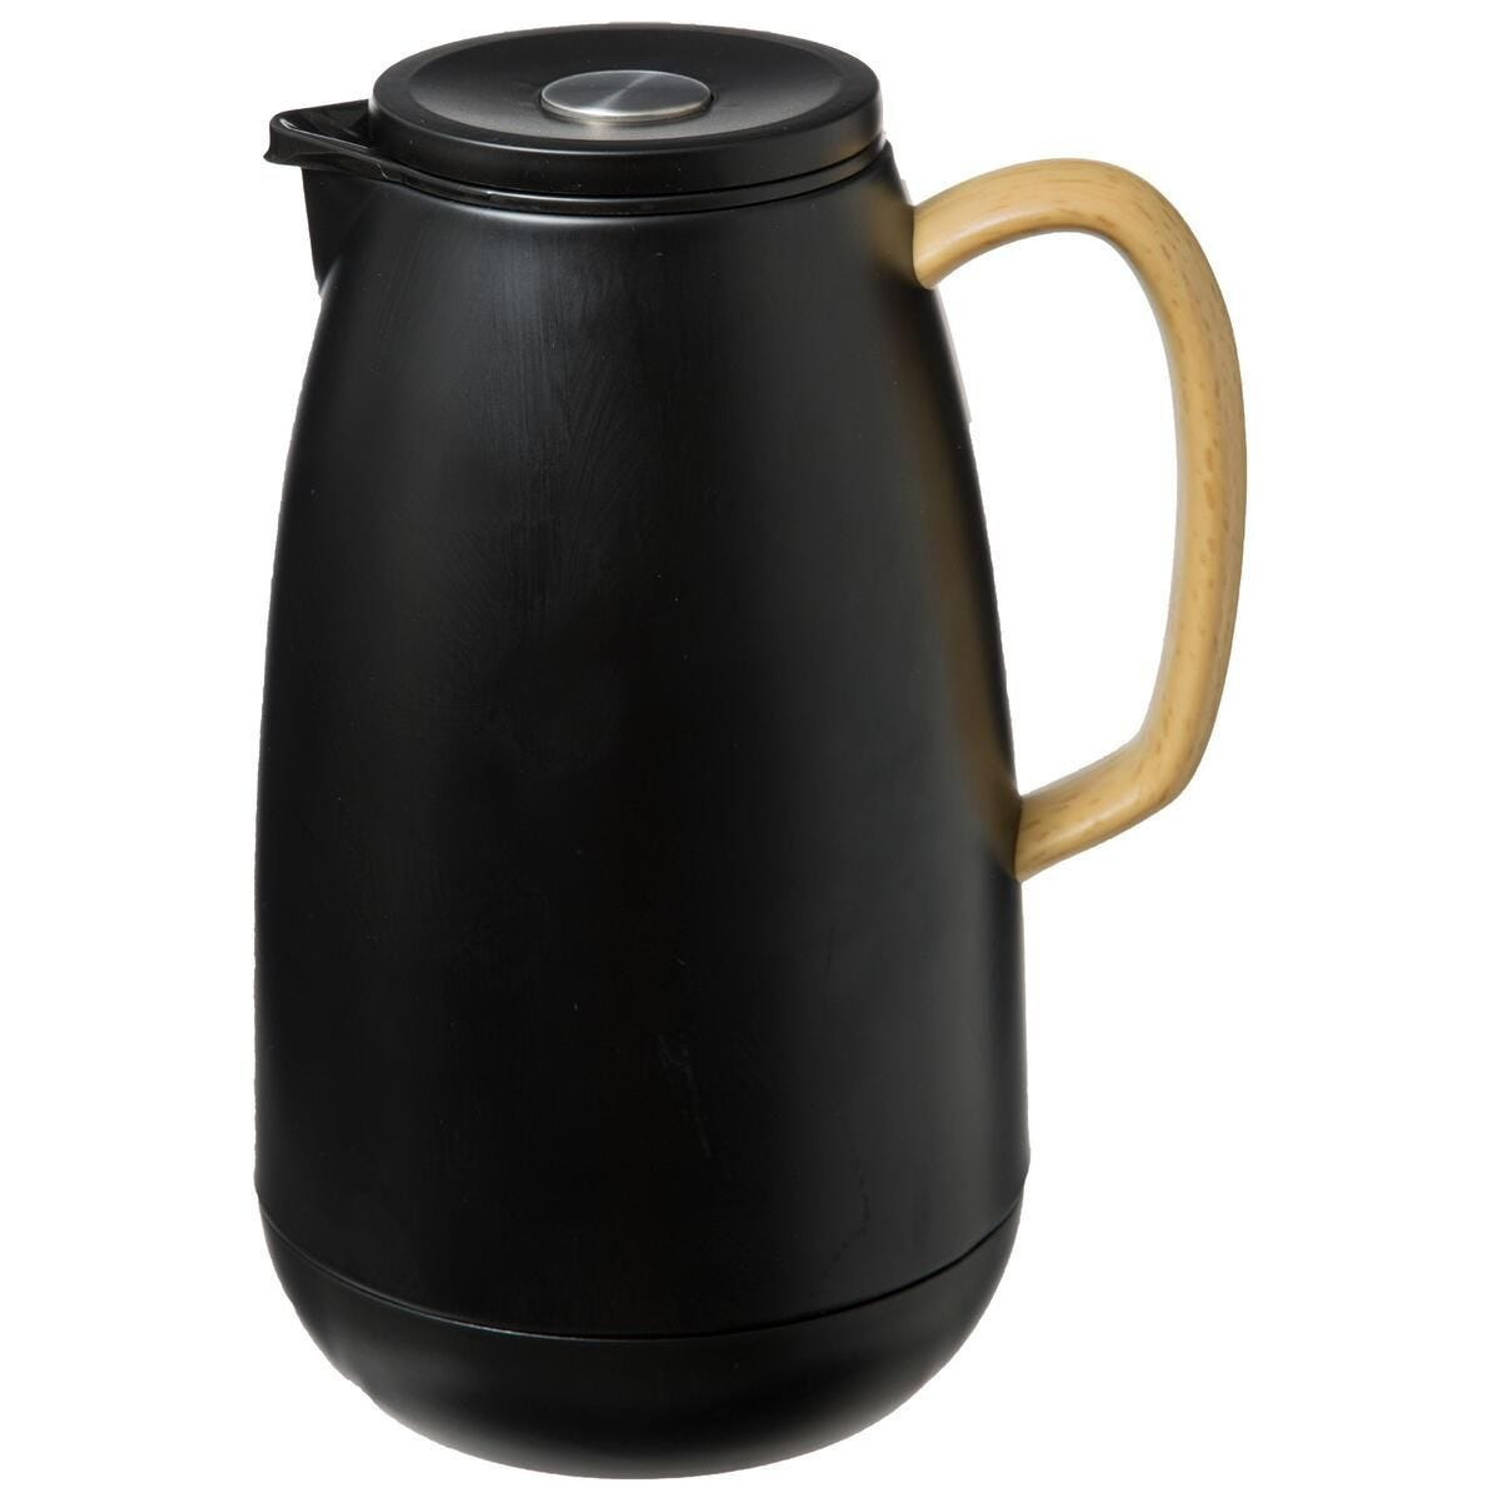 vragen nerveus worden campagne Koffie/thee thermoskan/isoleerkan RVS 1 liter zwart - Thermoskannen |  Blokker